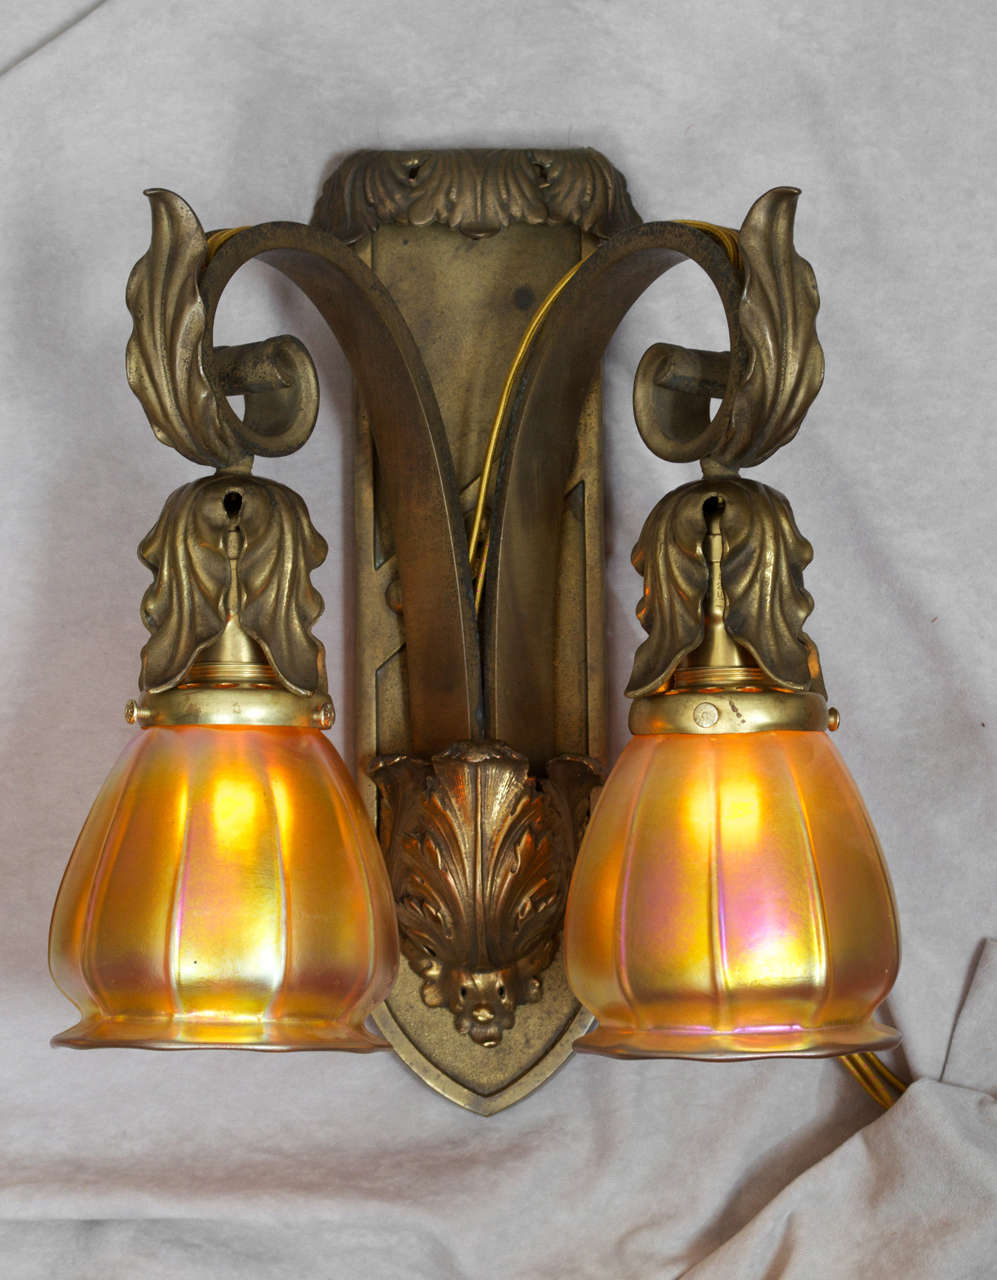 Beaux Arts Pair of Gilt Bronze Two-Arm Sconces with Handblown Steuben Glass